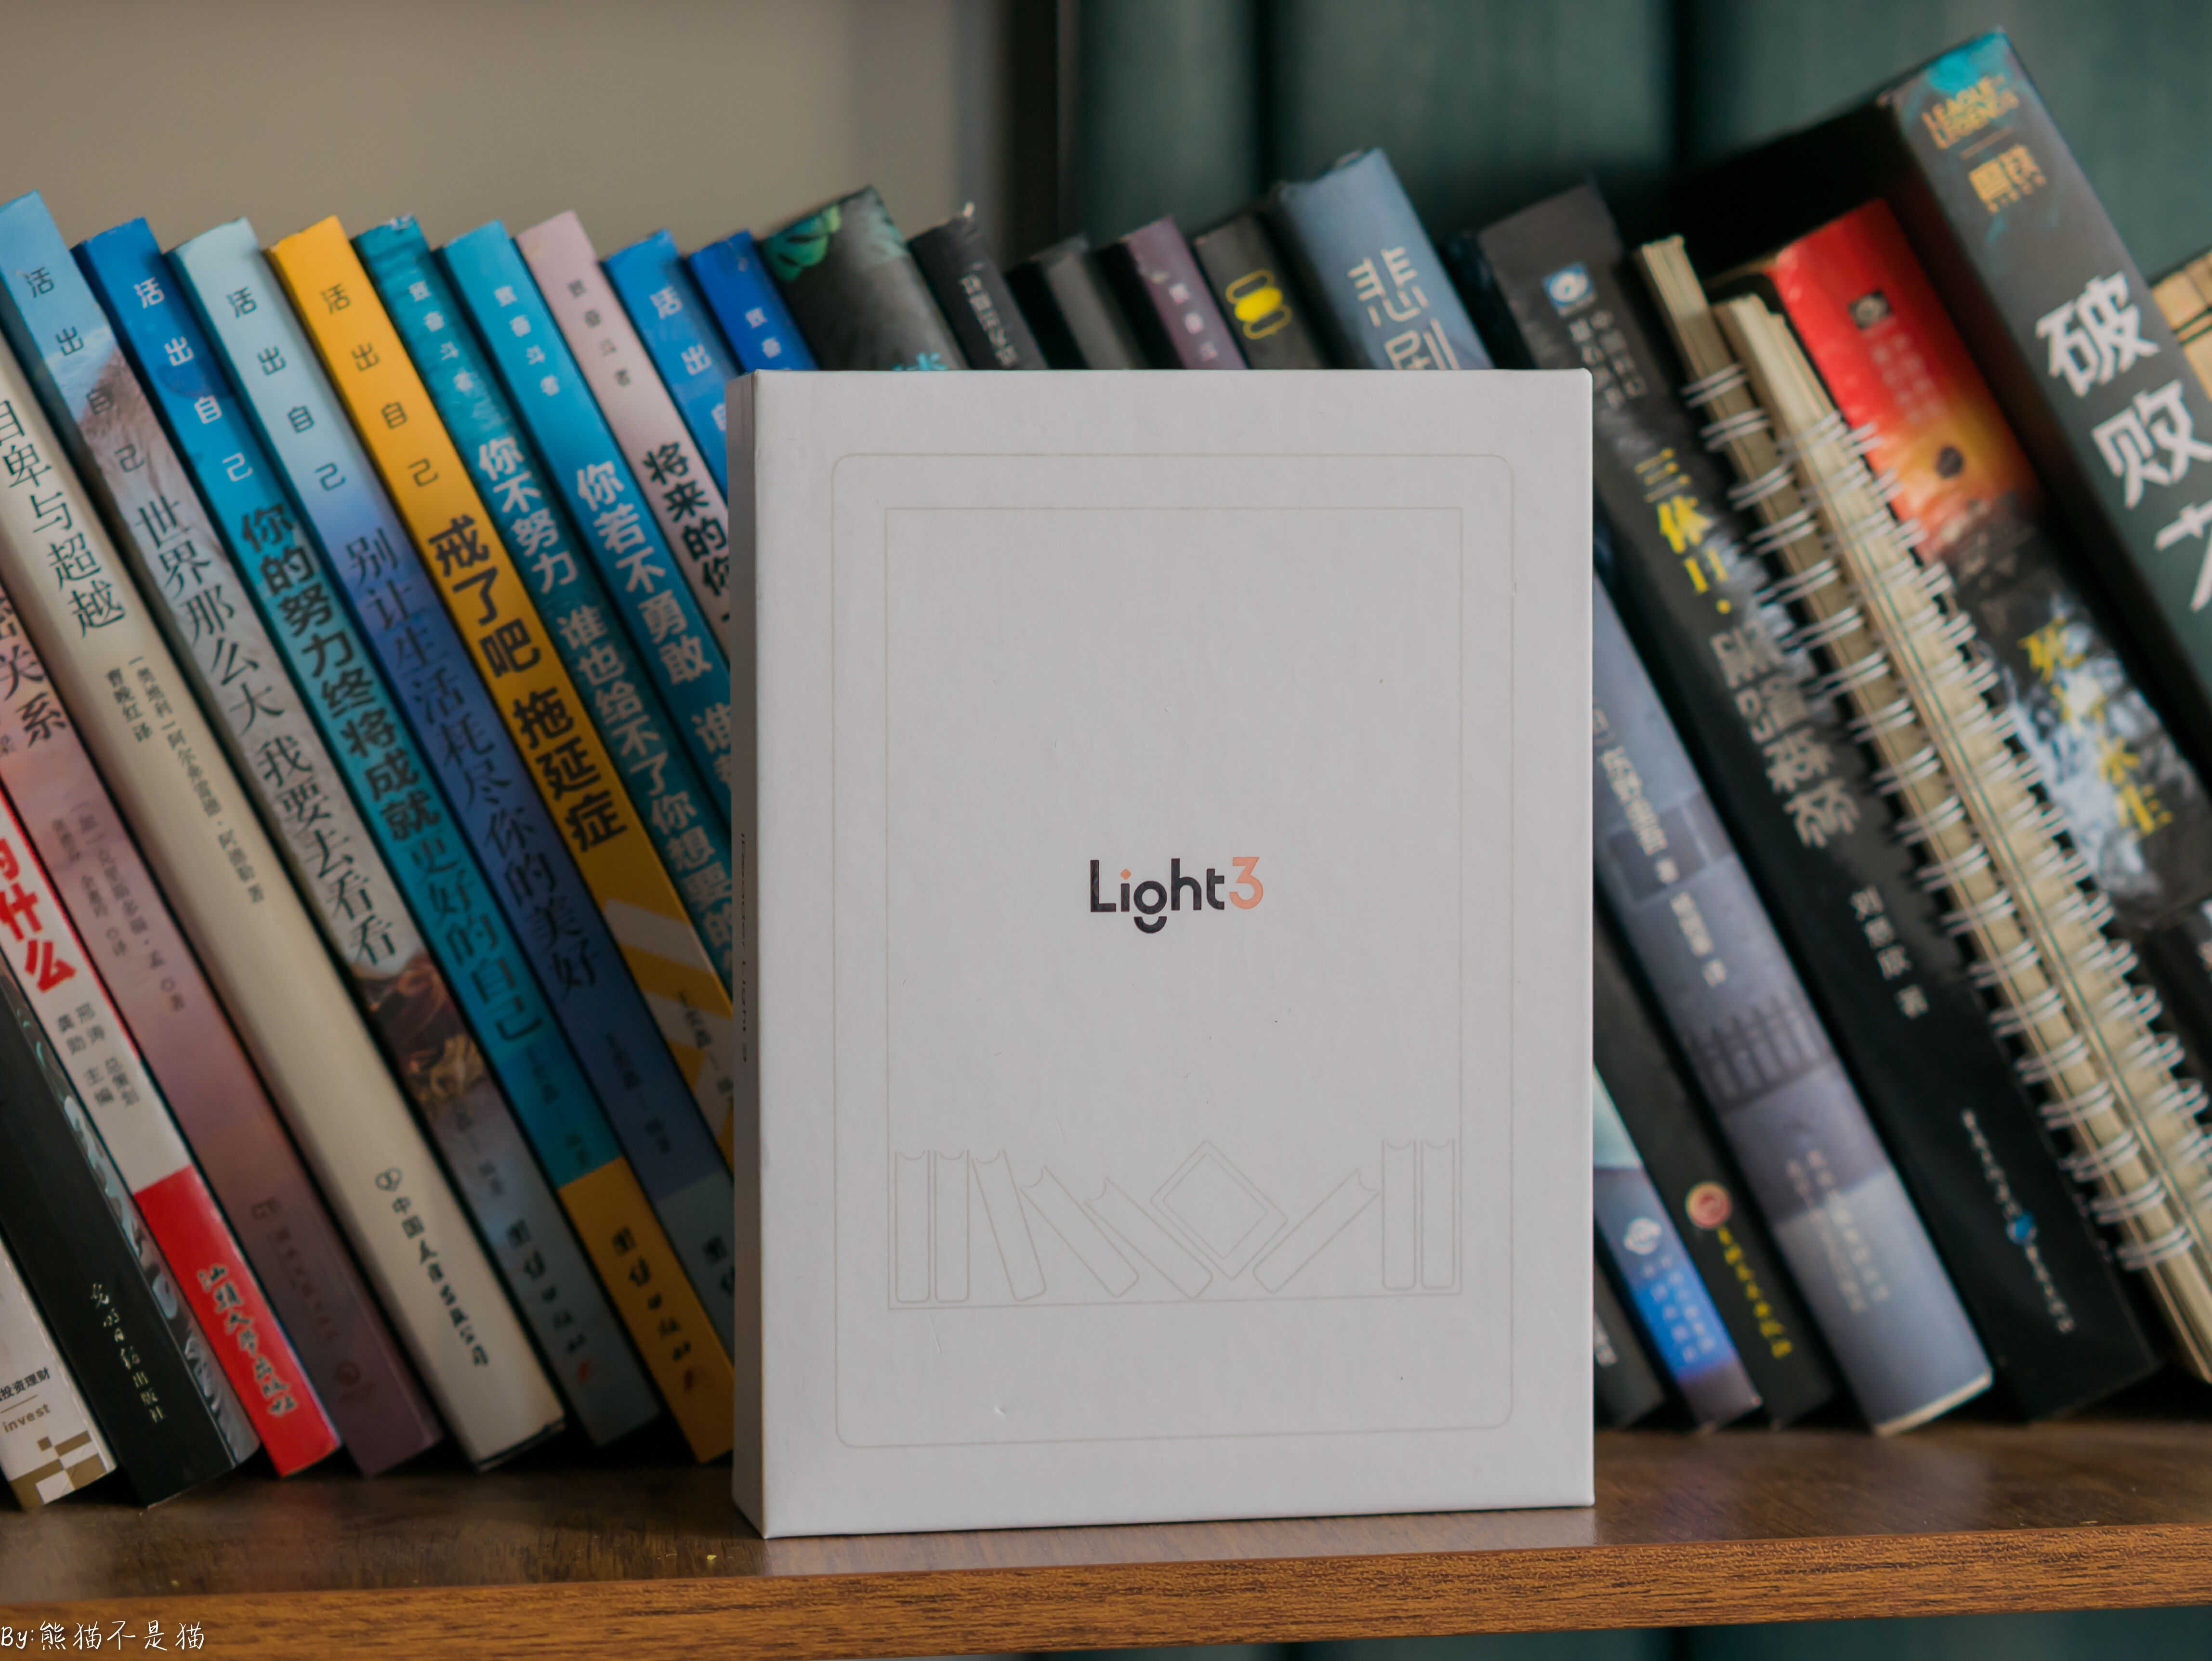 轻薄便携，智能阅读新选择！享受纸质书般舒适—掌阅iReader Light3